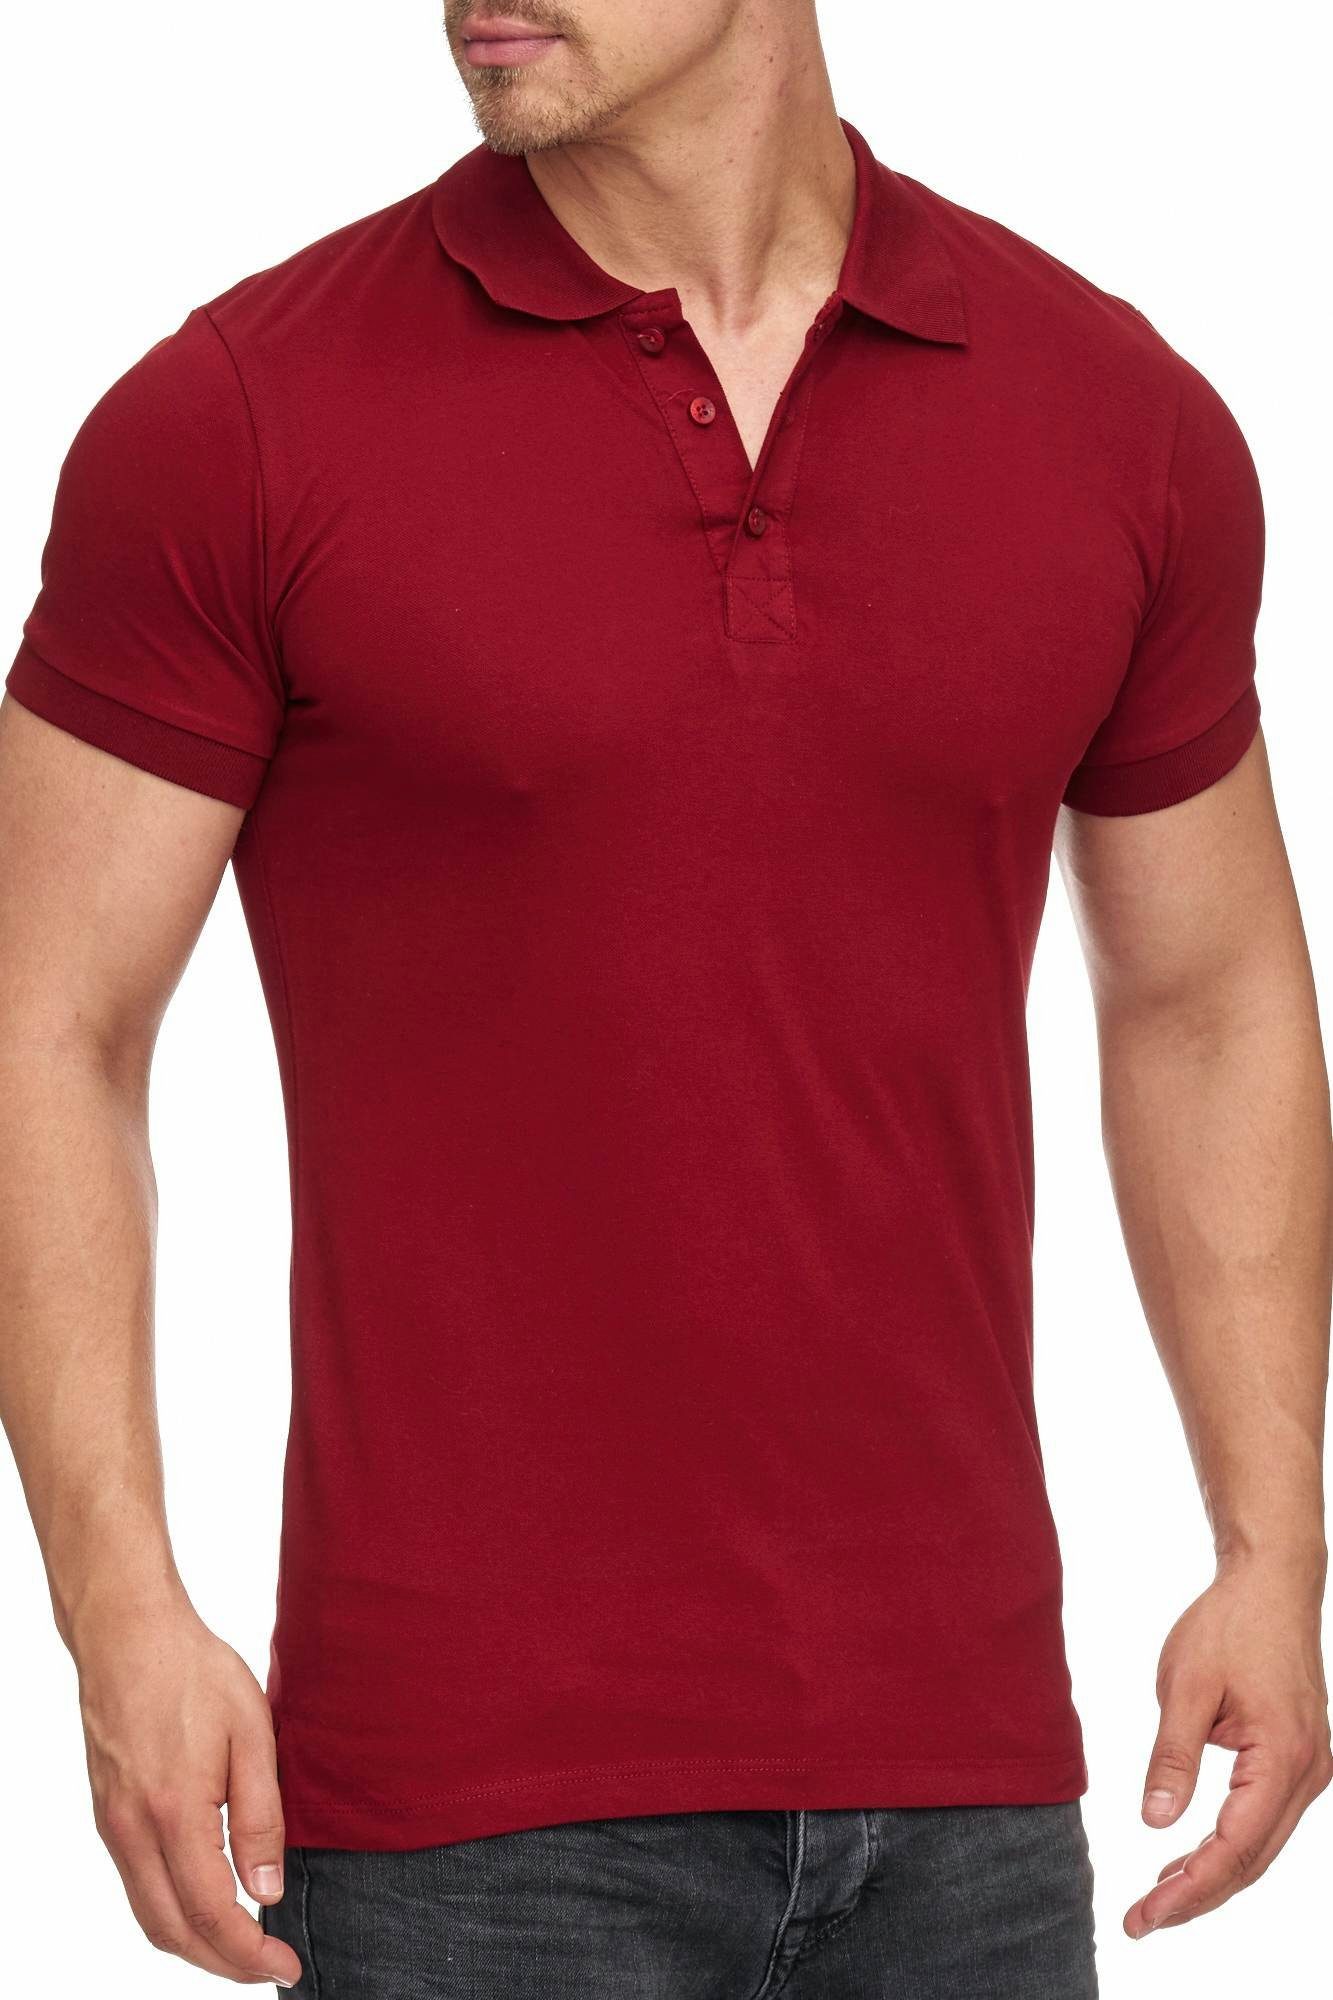 Tazzio Poloshirt 17101 zeitloses Polo Shirt bordo